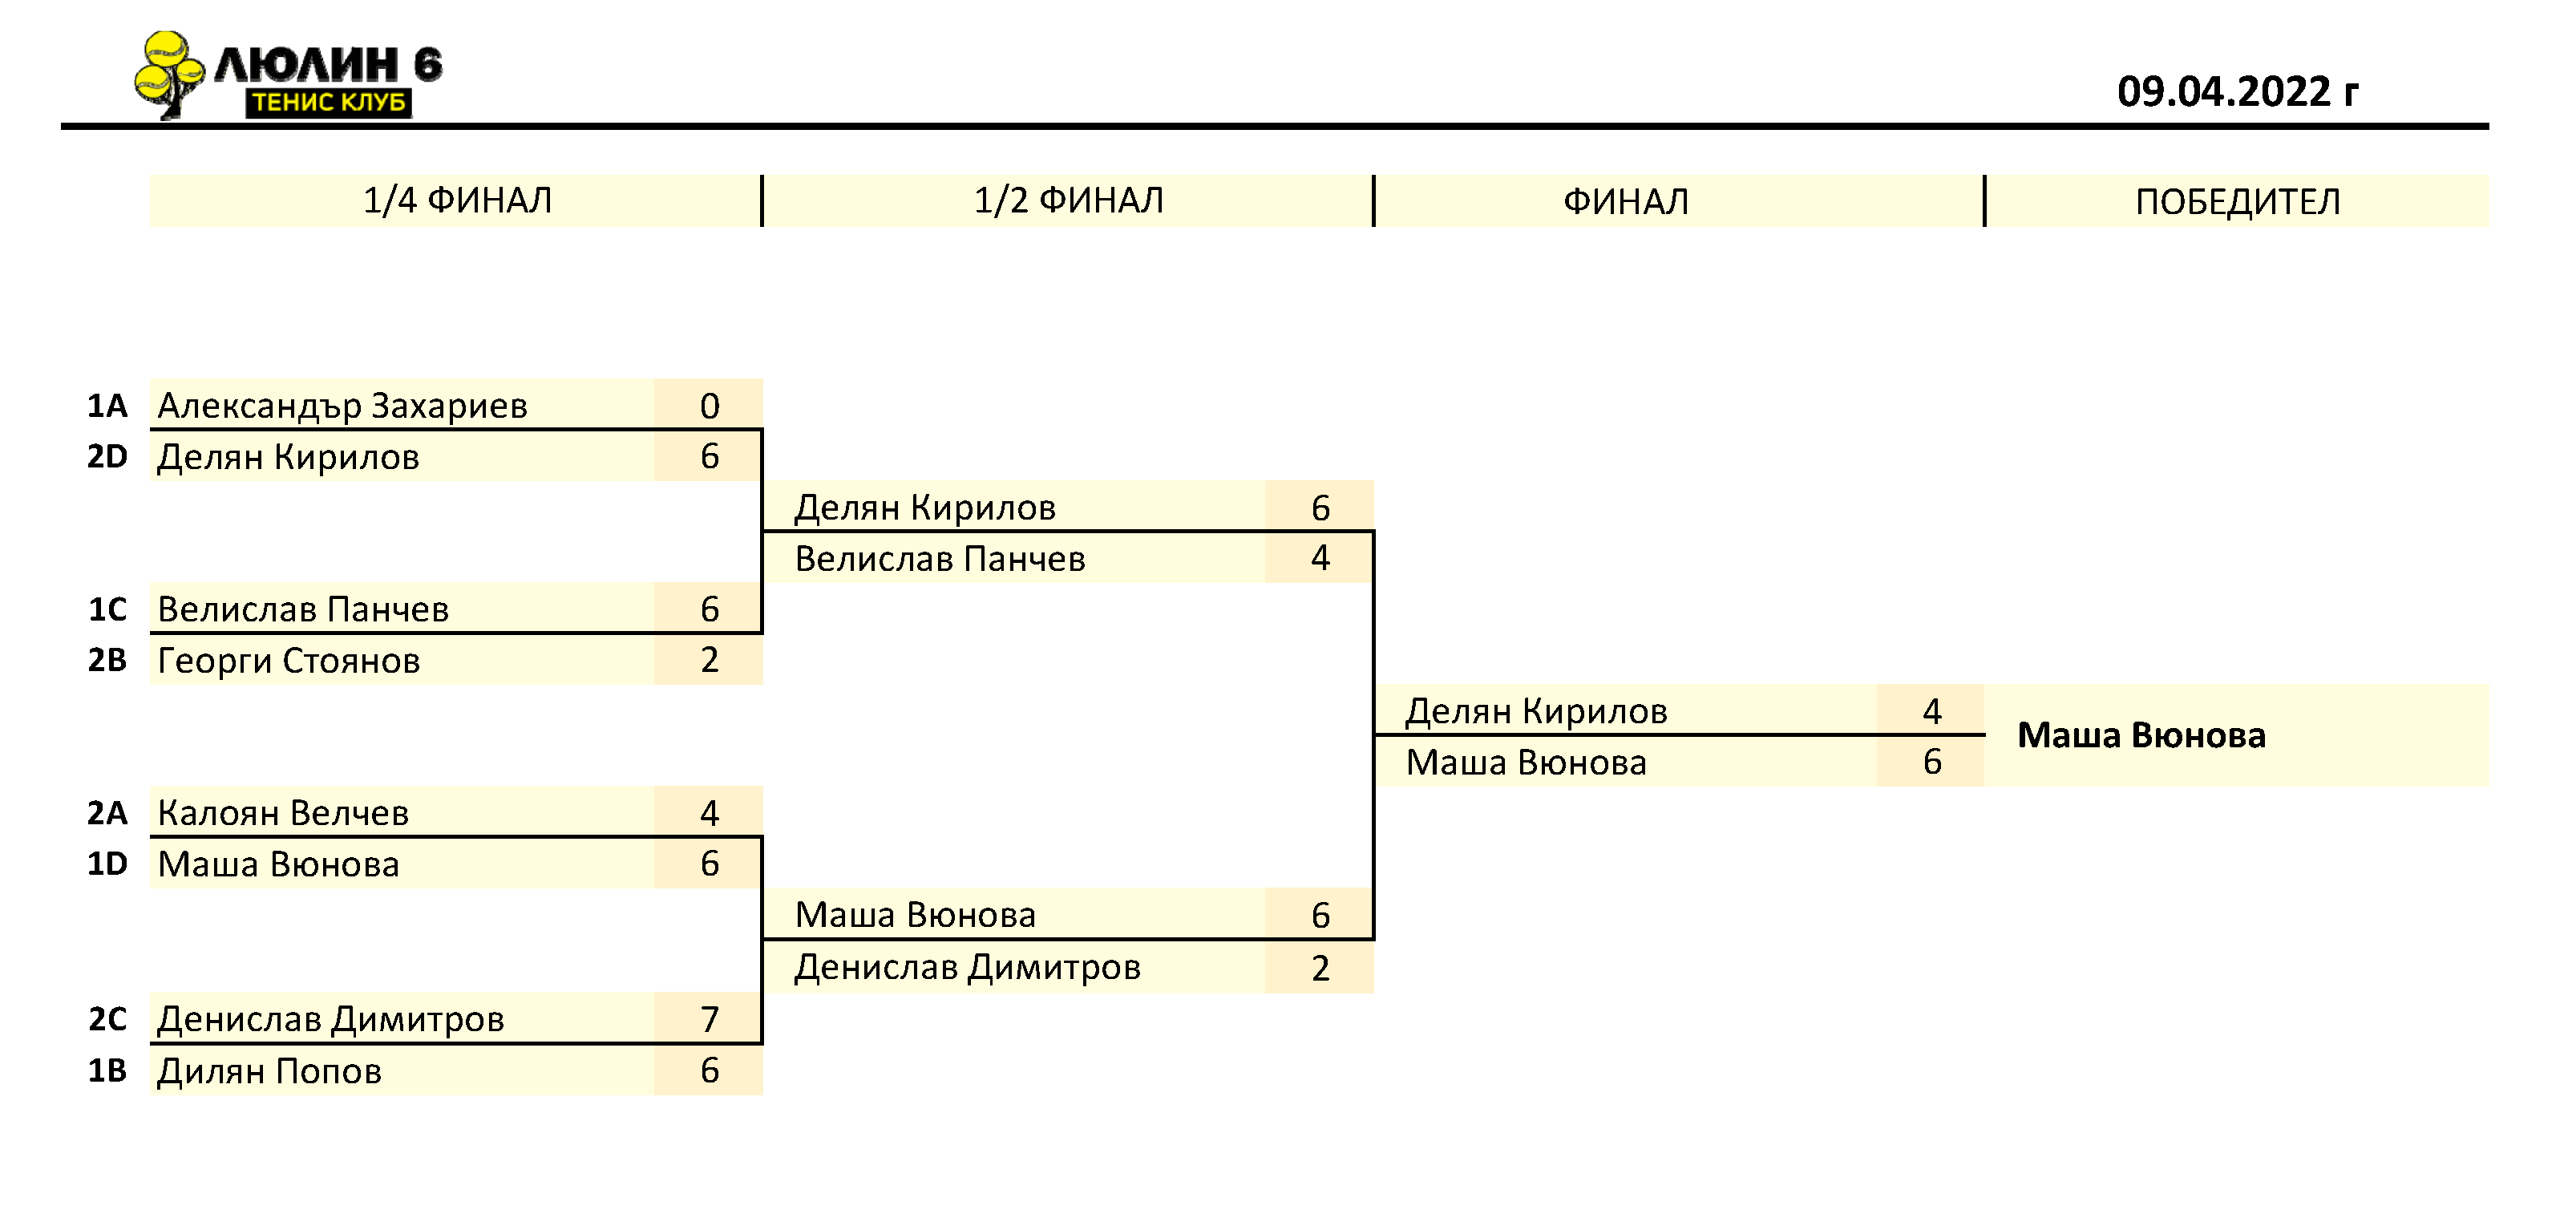 Резултати от тенис турнир 09.04.2022 г.